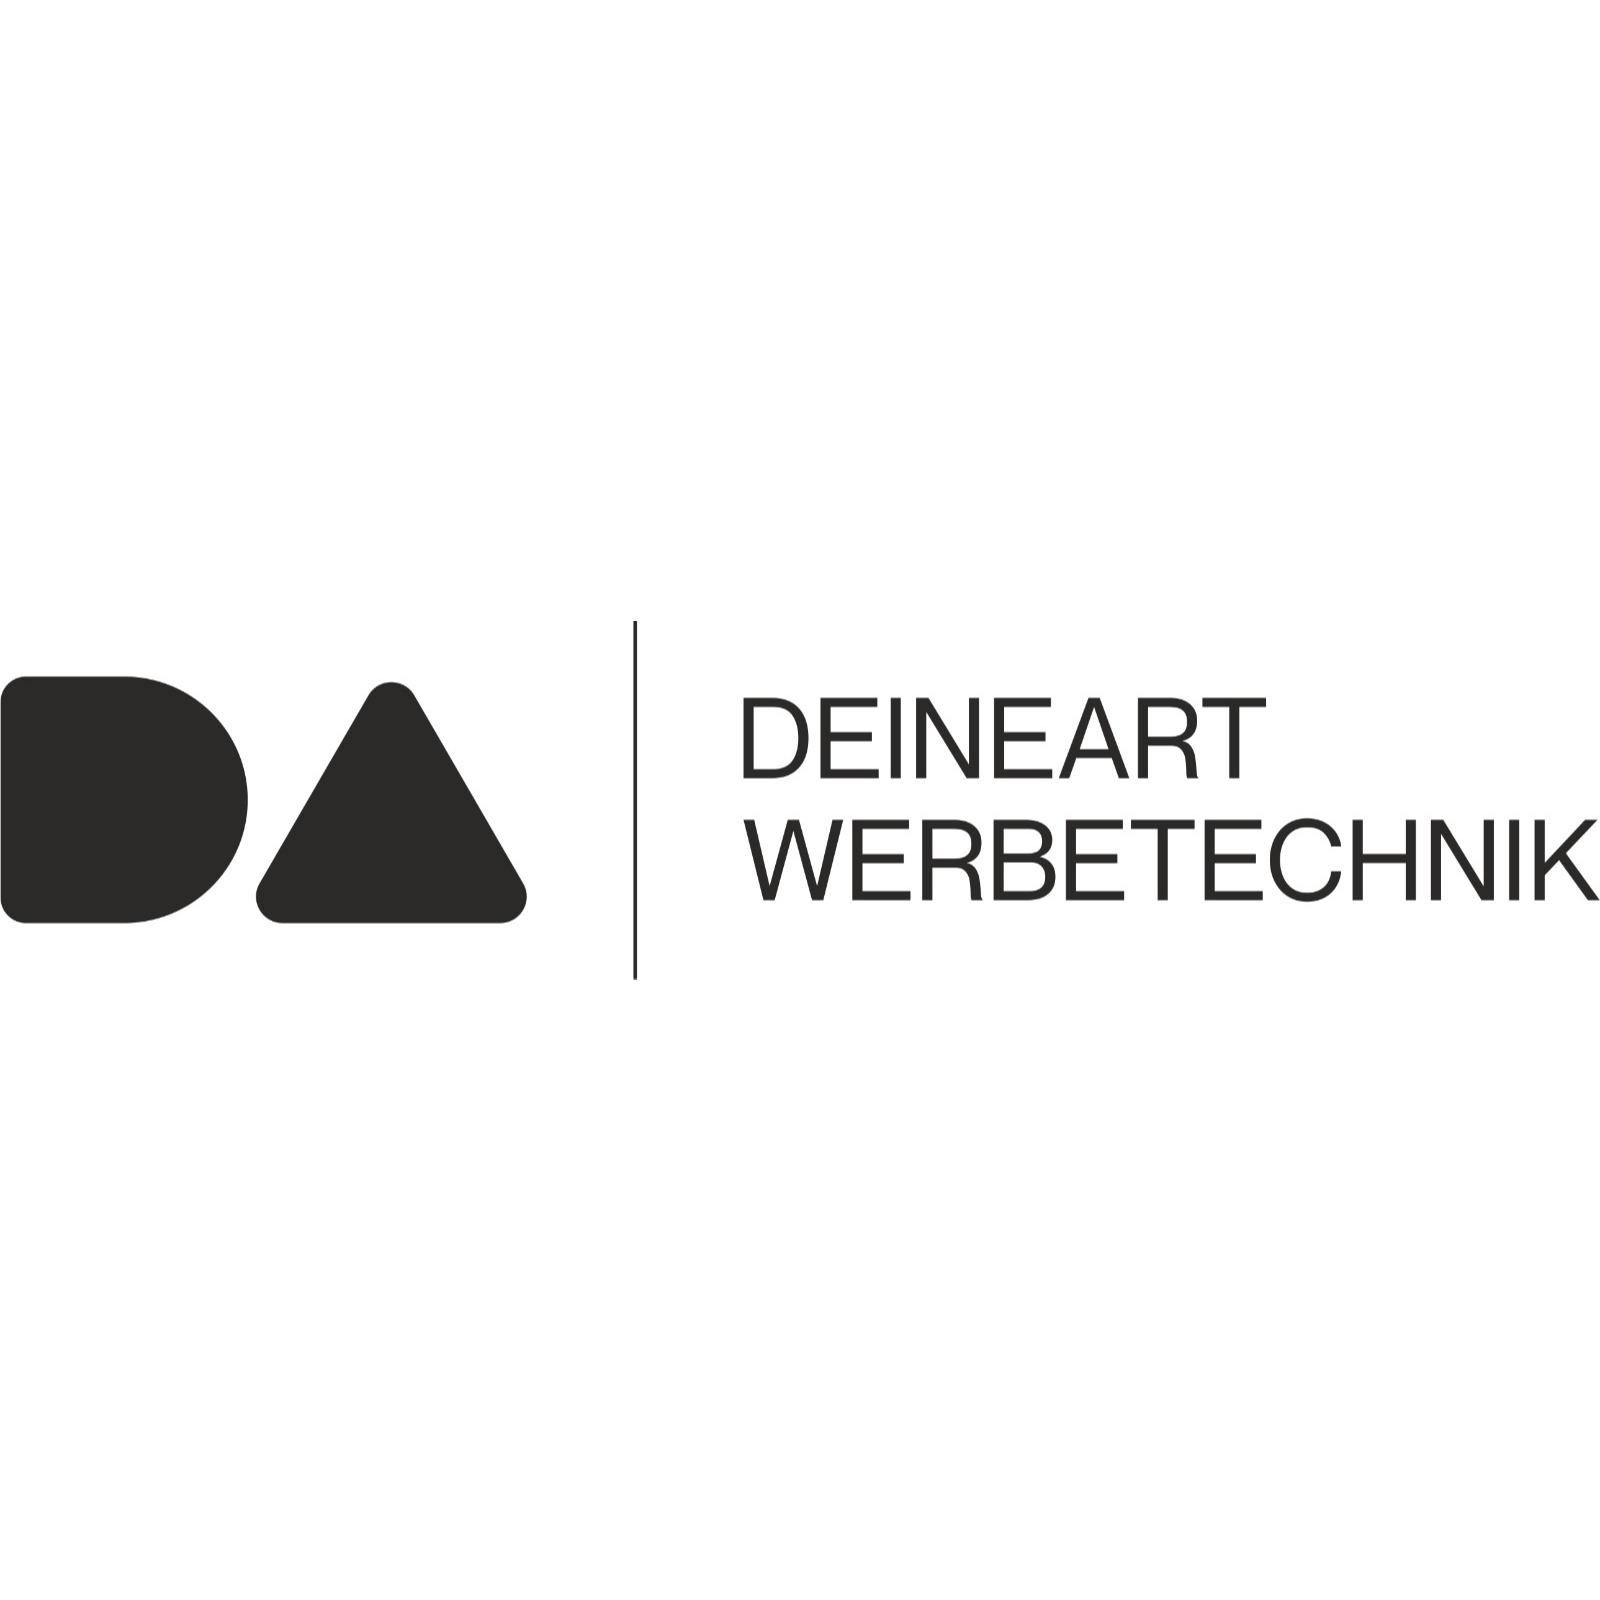 DEINEART WERBETECHNIK Logo